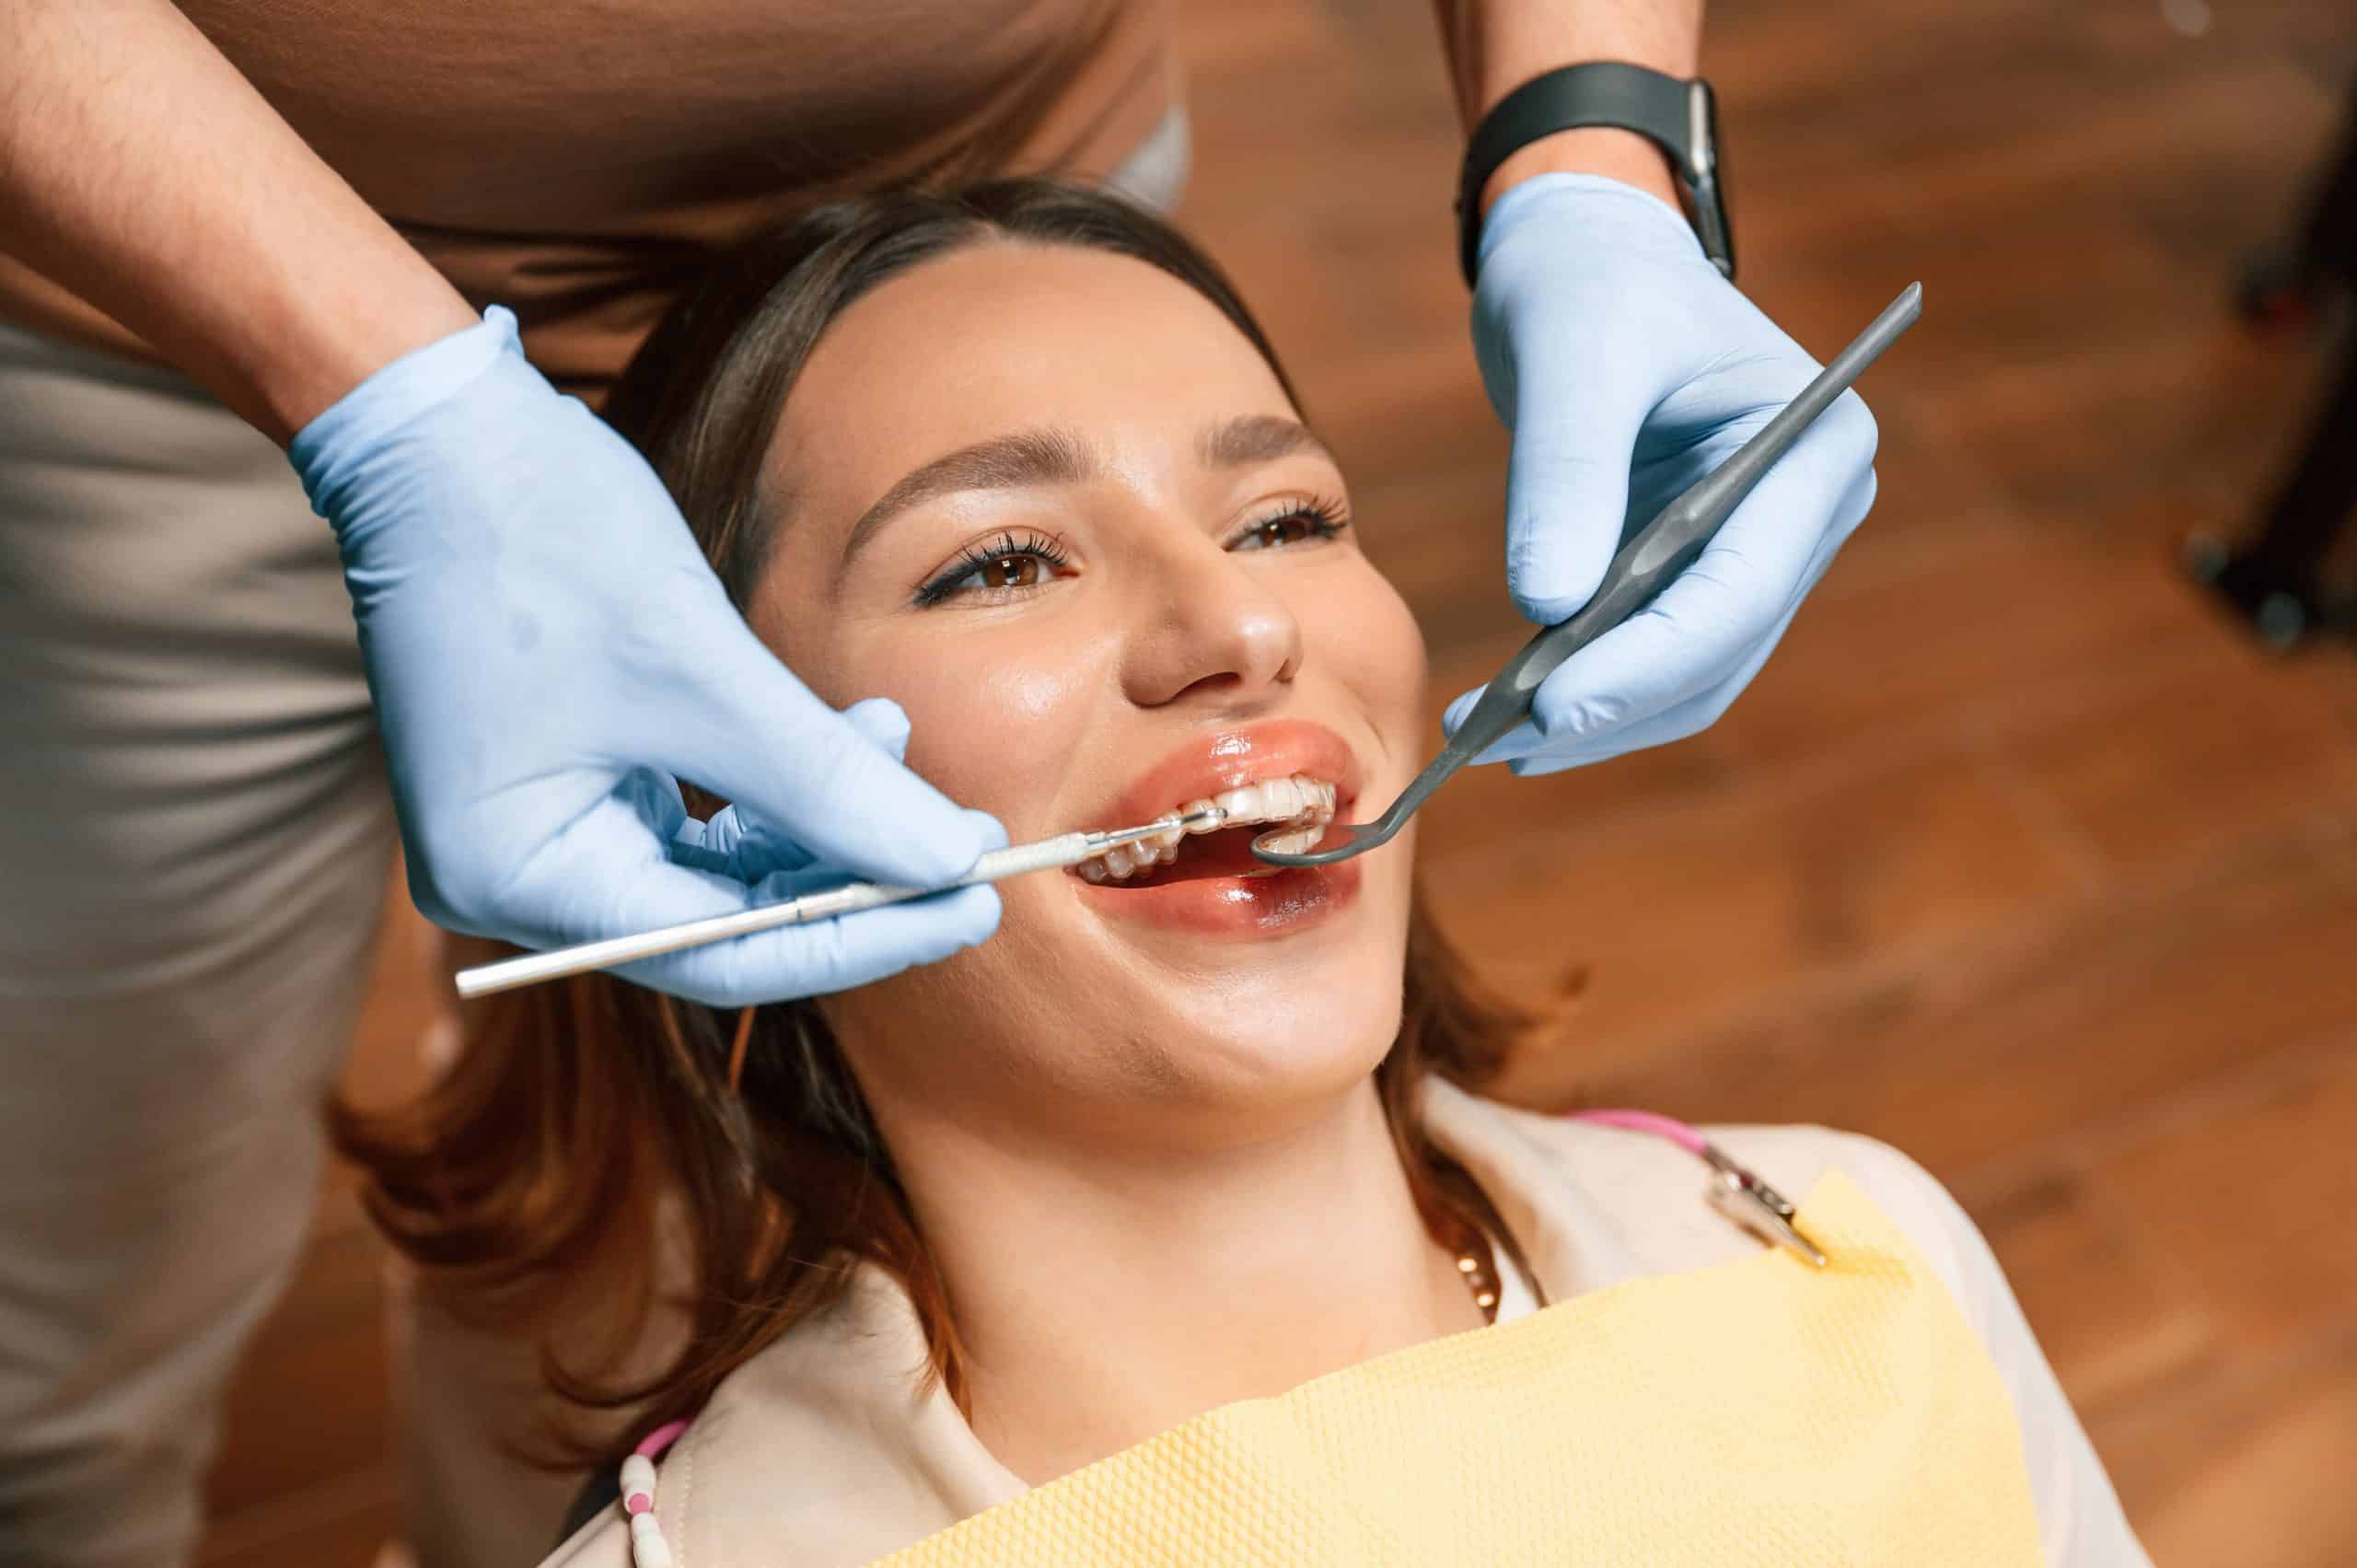 Teeth Straightening Methods